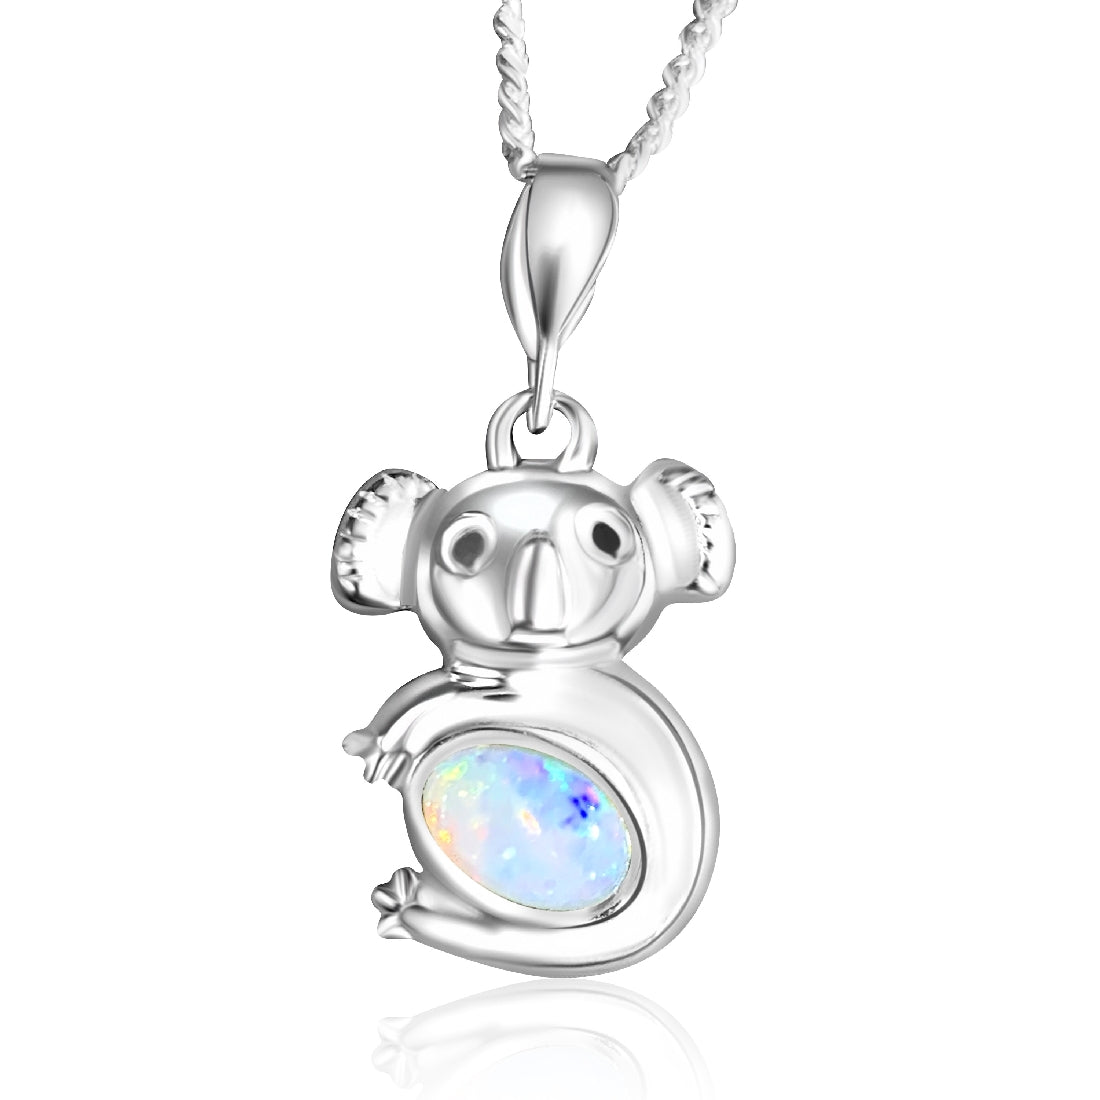 Sterling Silver Koala White Opal 6x4mm pendant - Masterpiece Jewellery Opal & Gems Sydney Australia | Online Shop